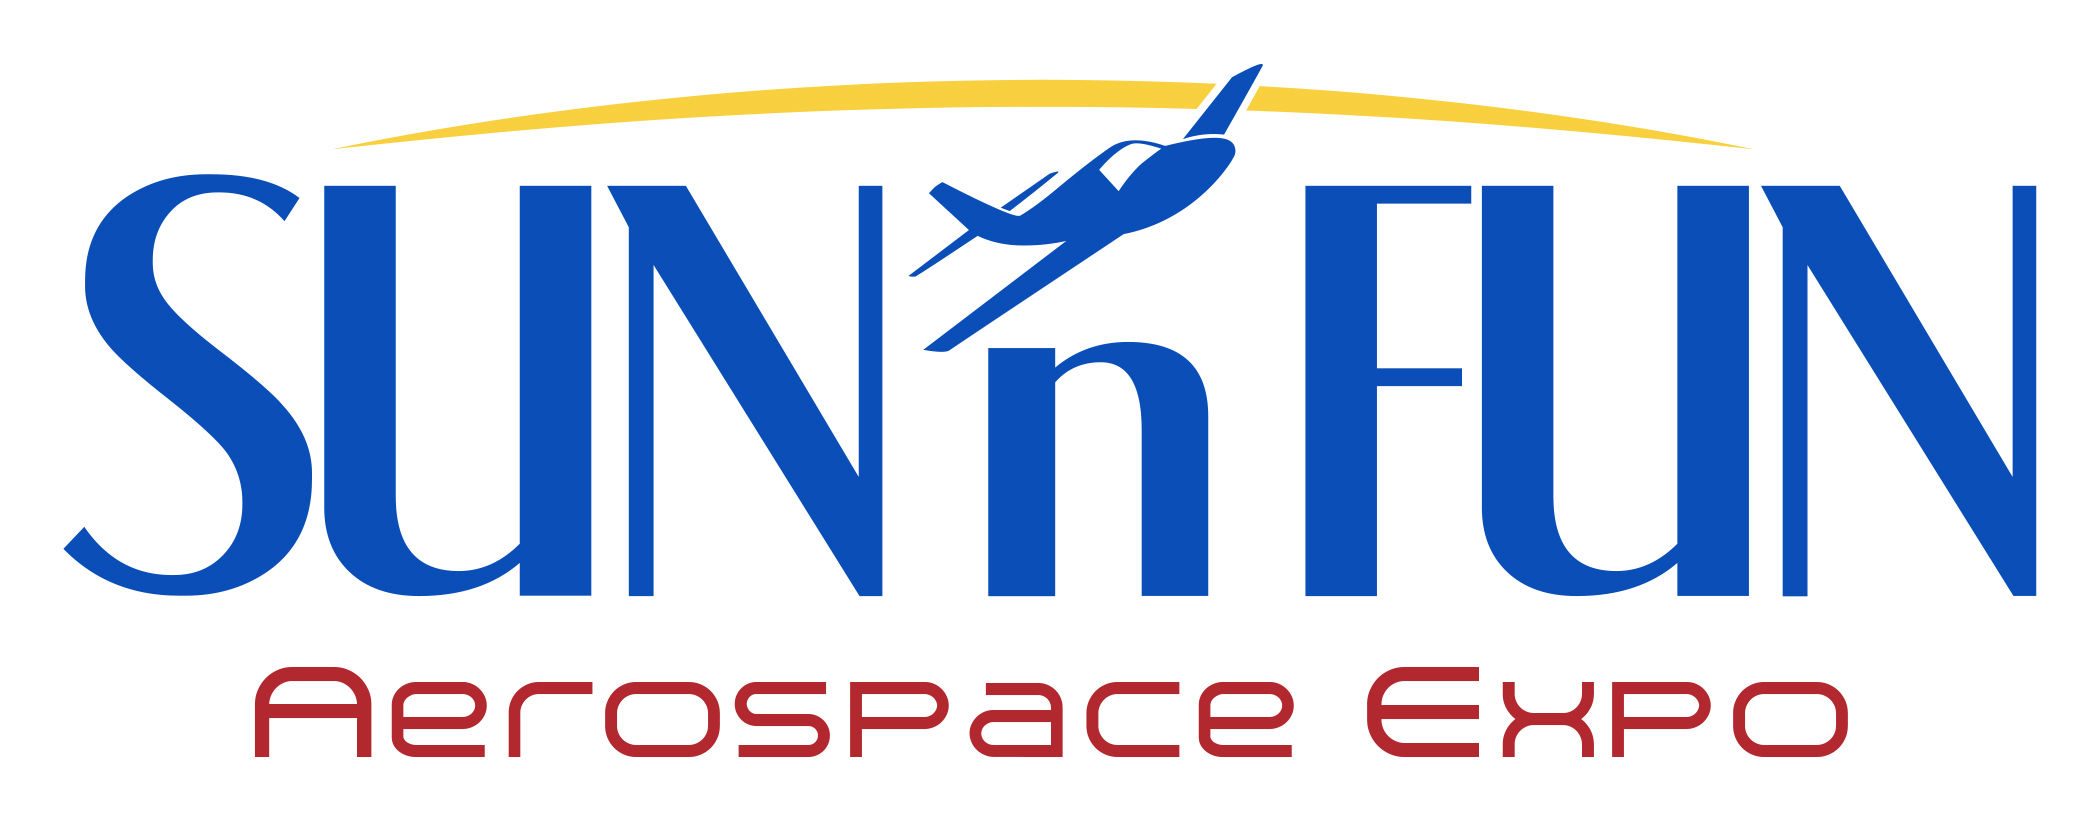 SUN 'n FUN Aerospace Expo